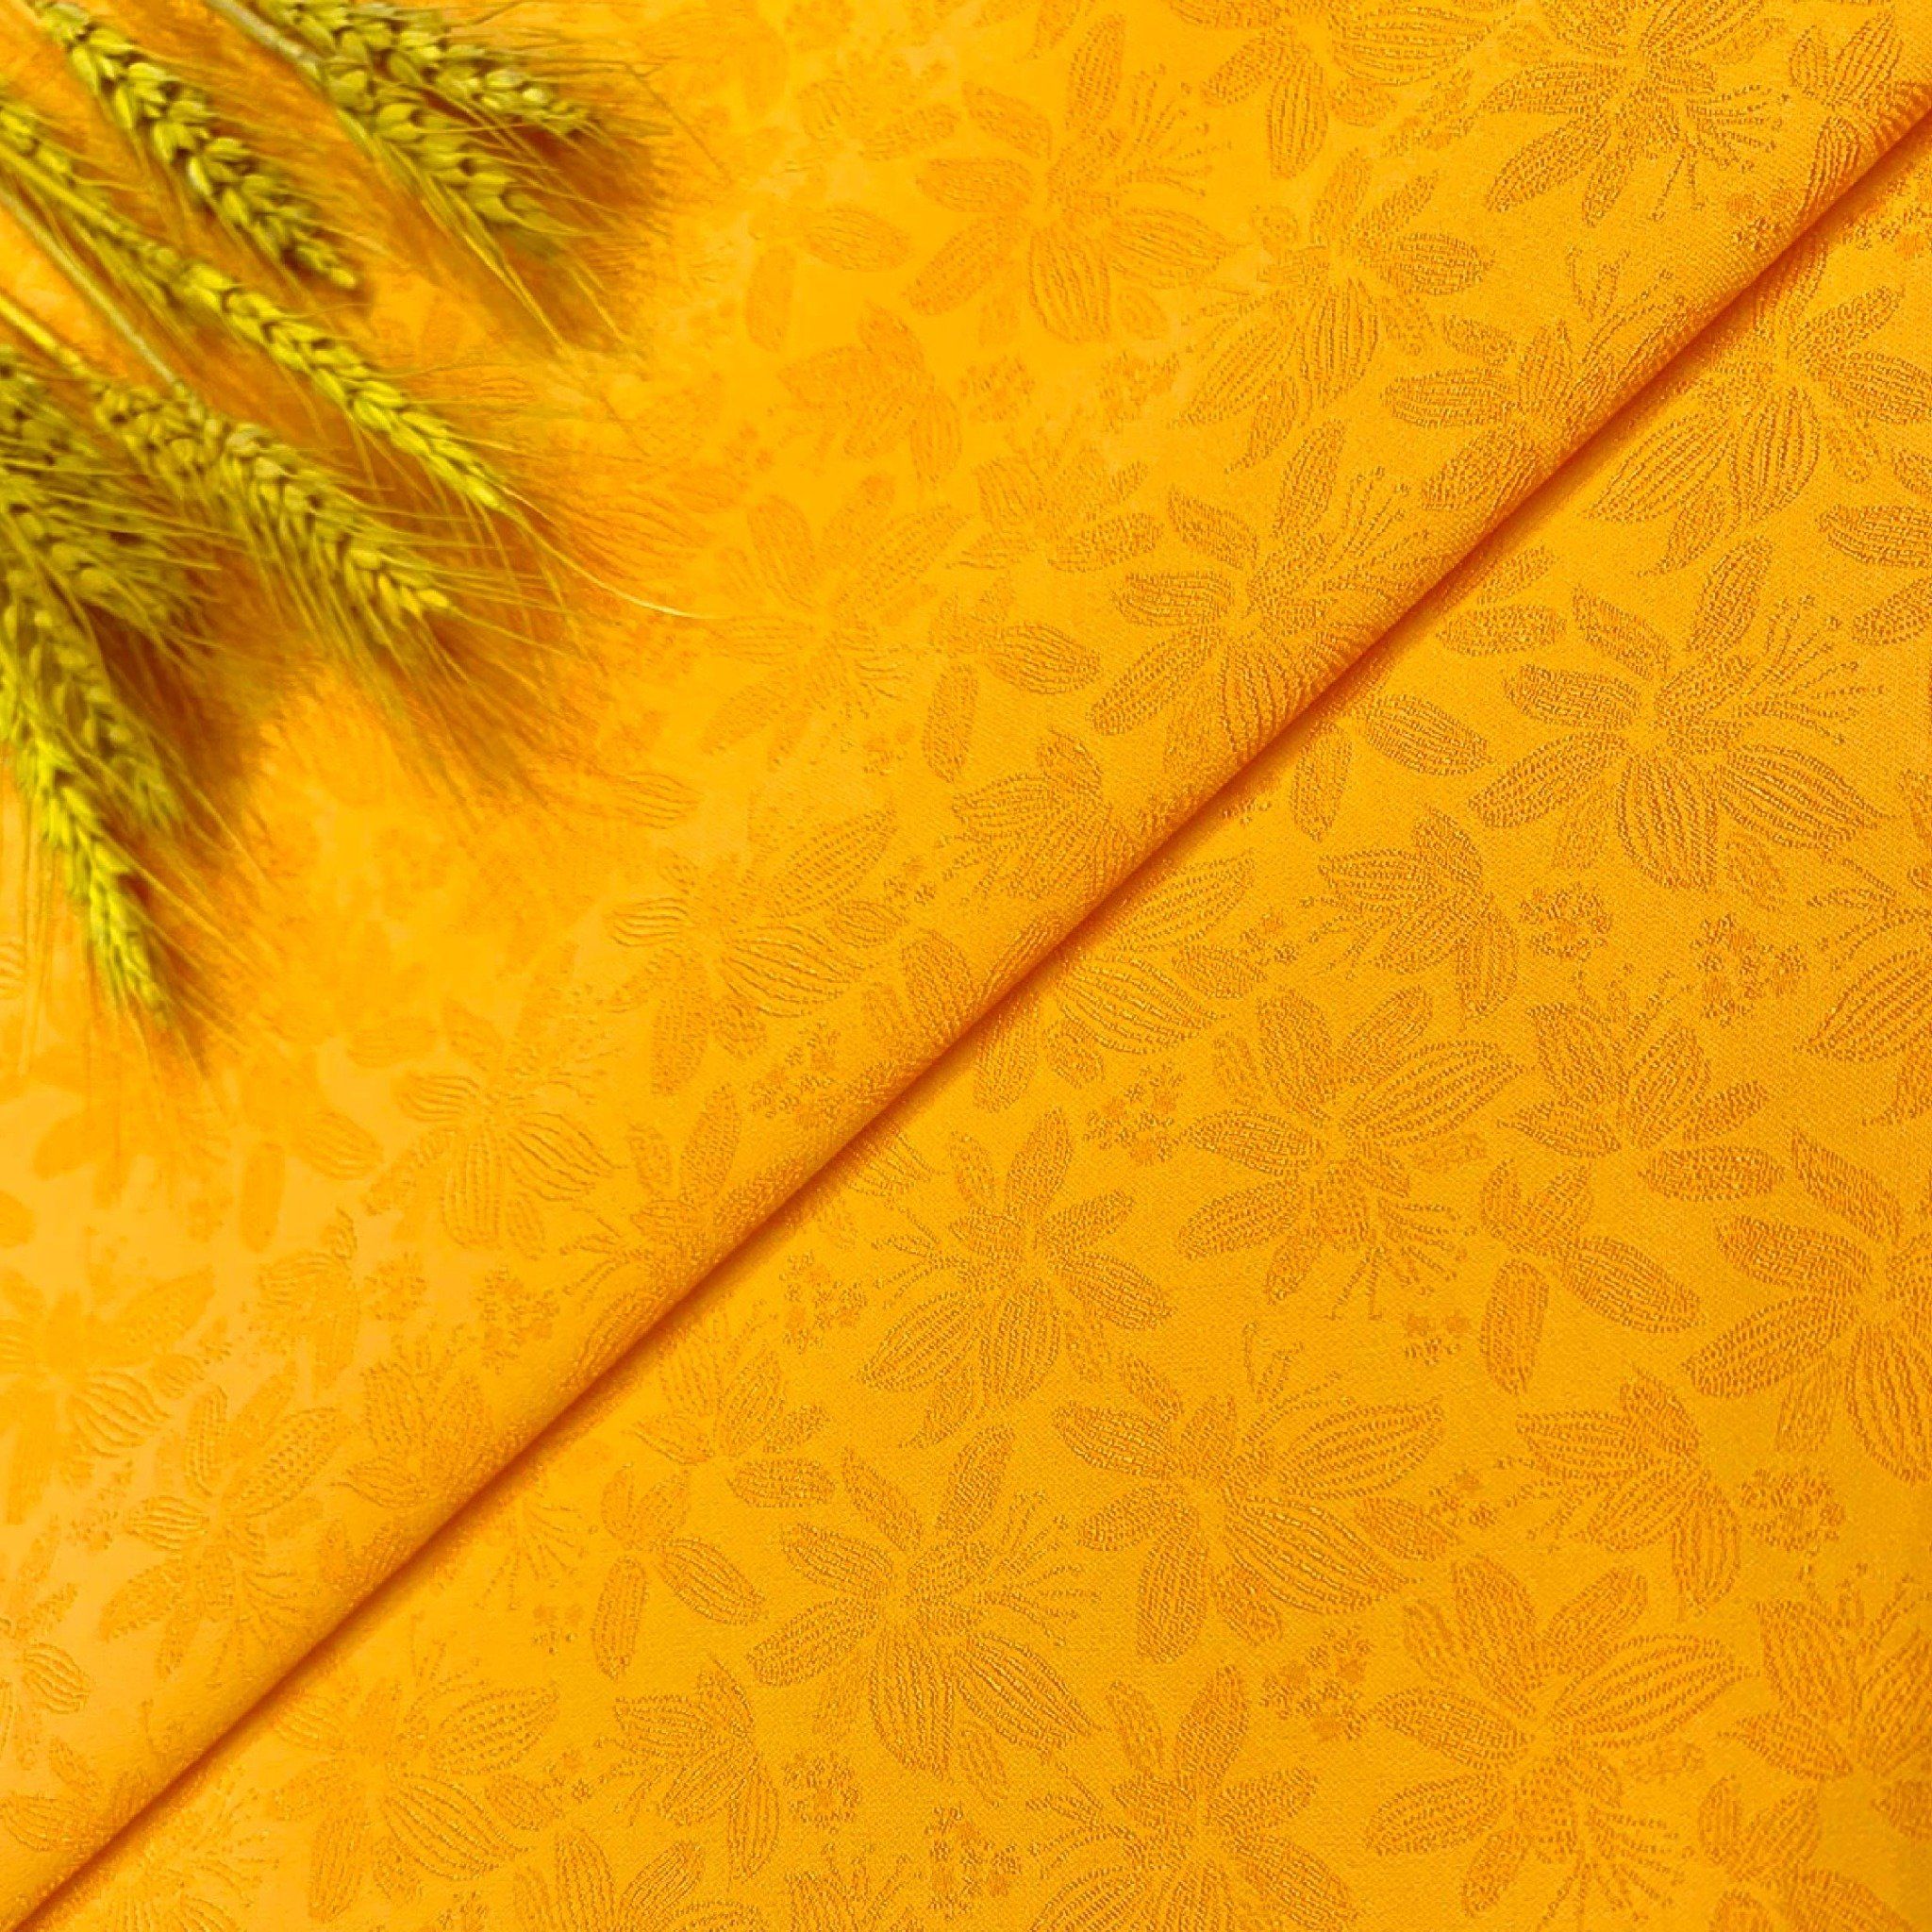 ECYN001039 Vải Gấm Hoa Văn Co Giãn Màu Vàng Ánh Cam